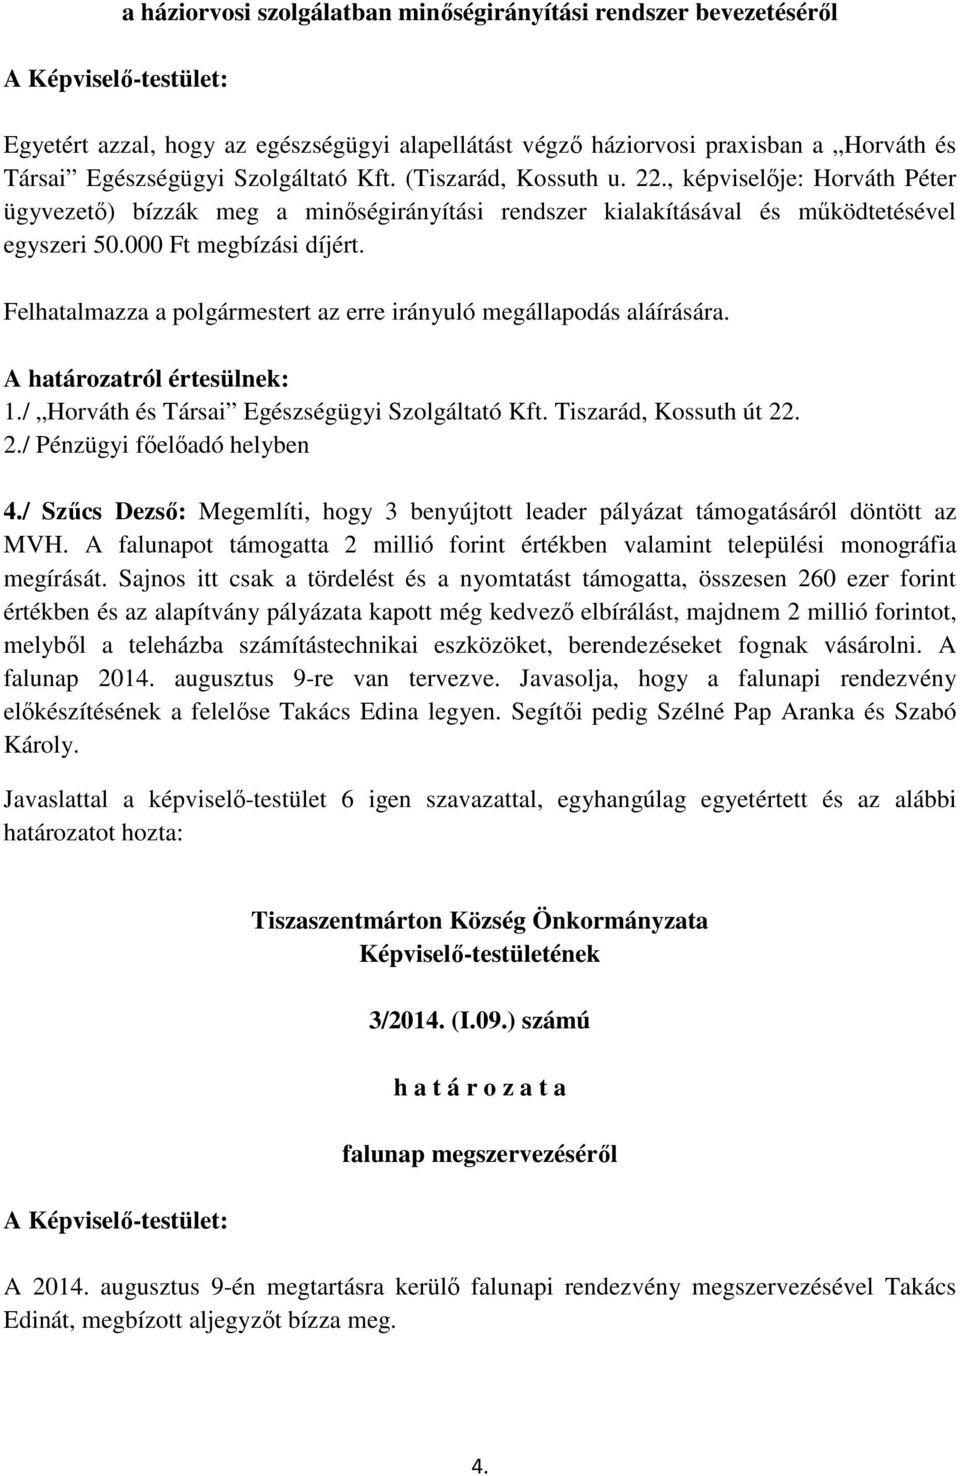 Felhatalmazza a polgármestert az erre irányuló megállapodás aláírására. 1./ Horváth és Társai Egészségügyi Szolgáltató Kft. Tiszarád, Kossuth út 22. 2./ Pénzügyi főelőadó helyben 4.